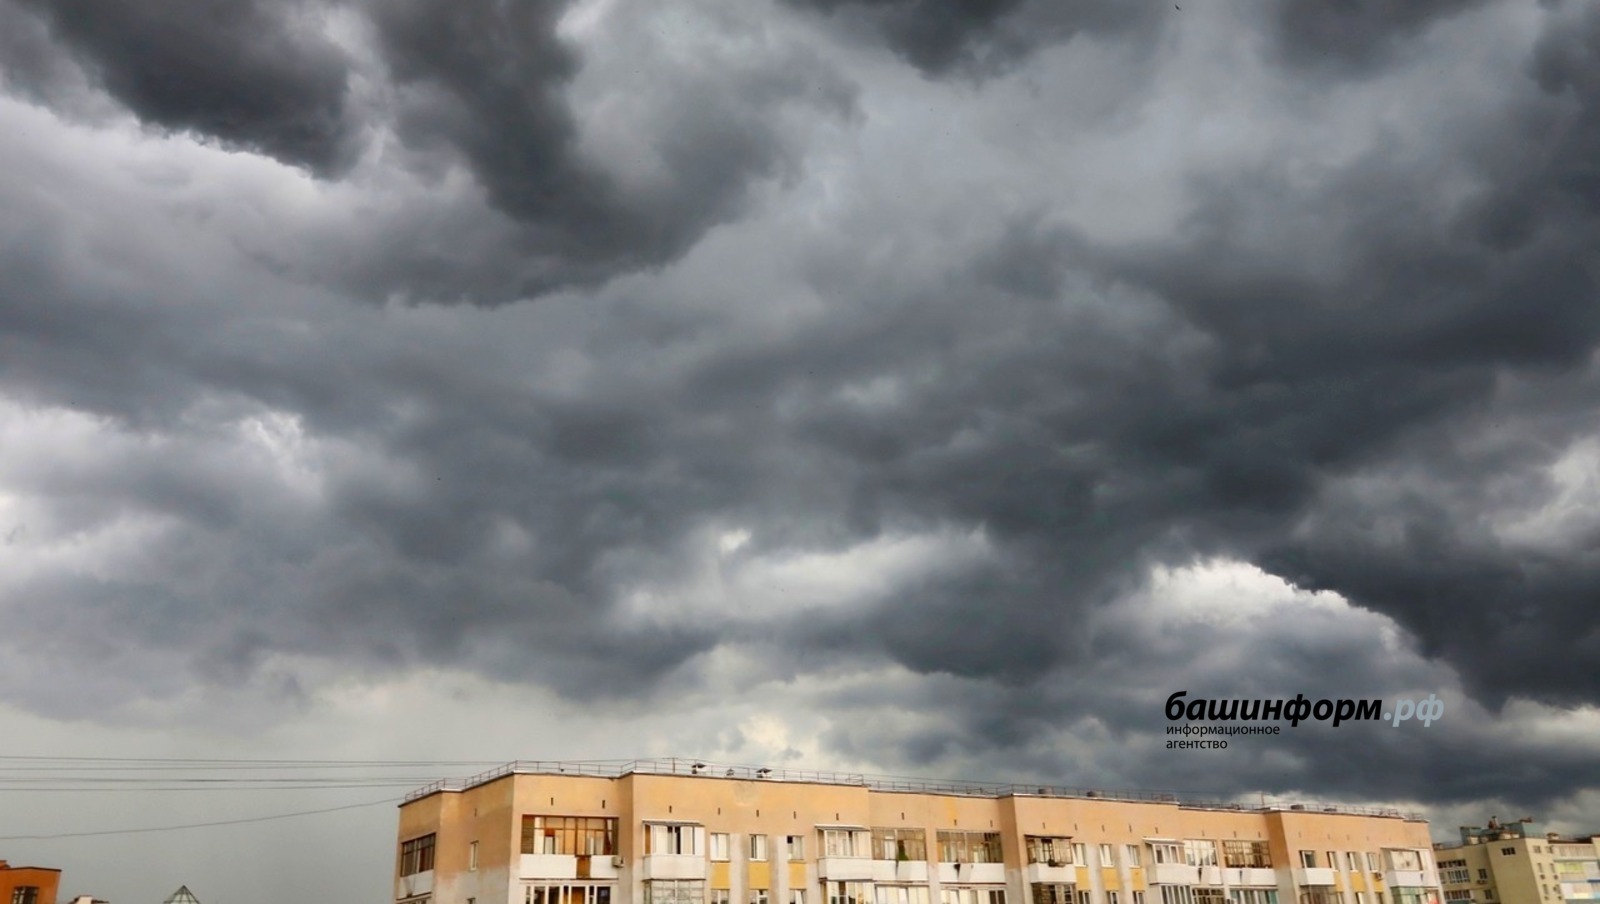 Внимание! МЧС предупреждает об ухудшении погодных условий в Башкирии